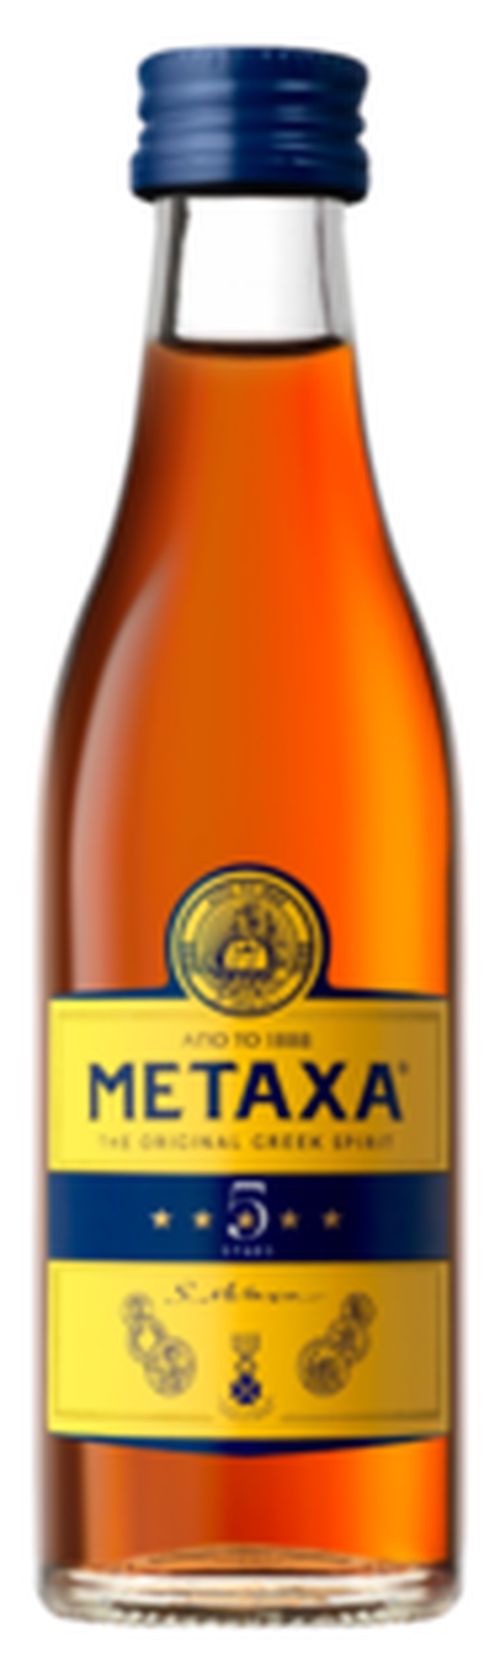 Mini Metaxa 5* 38% 0,05L